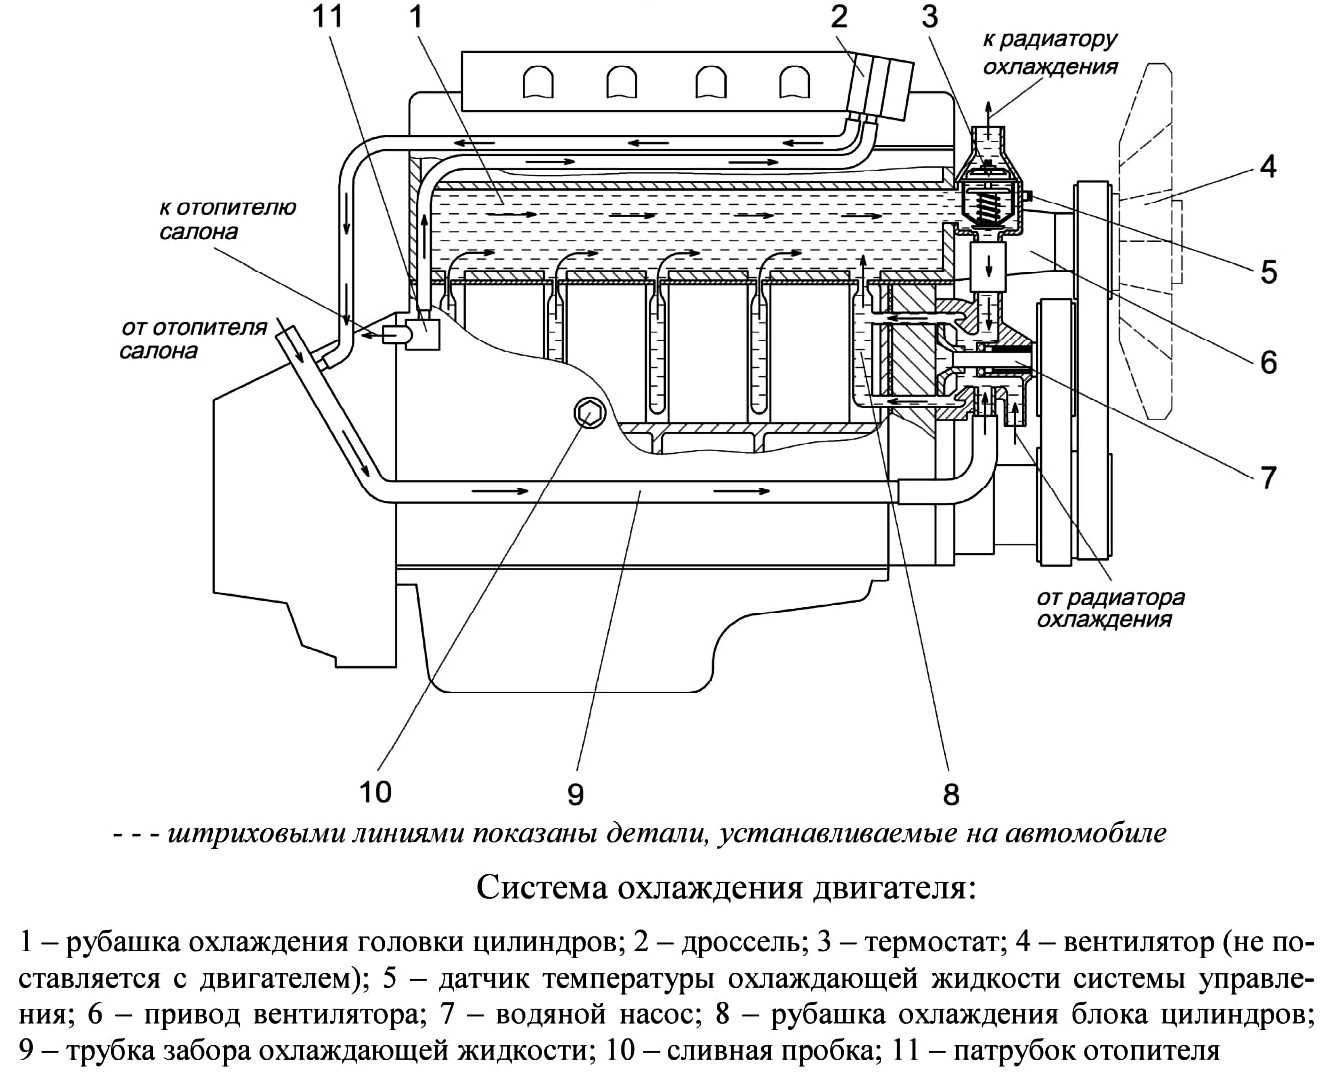 Конструкция системы охлаждения змз-409